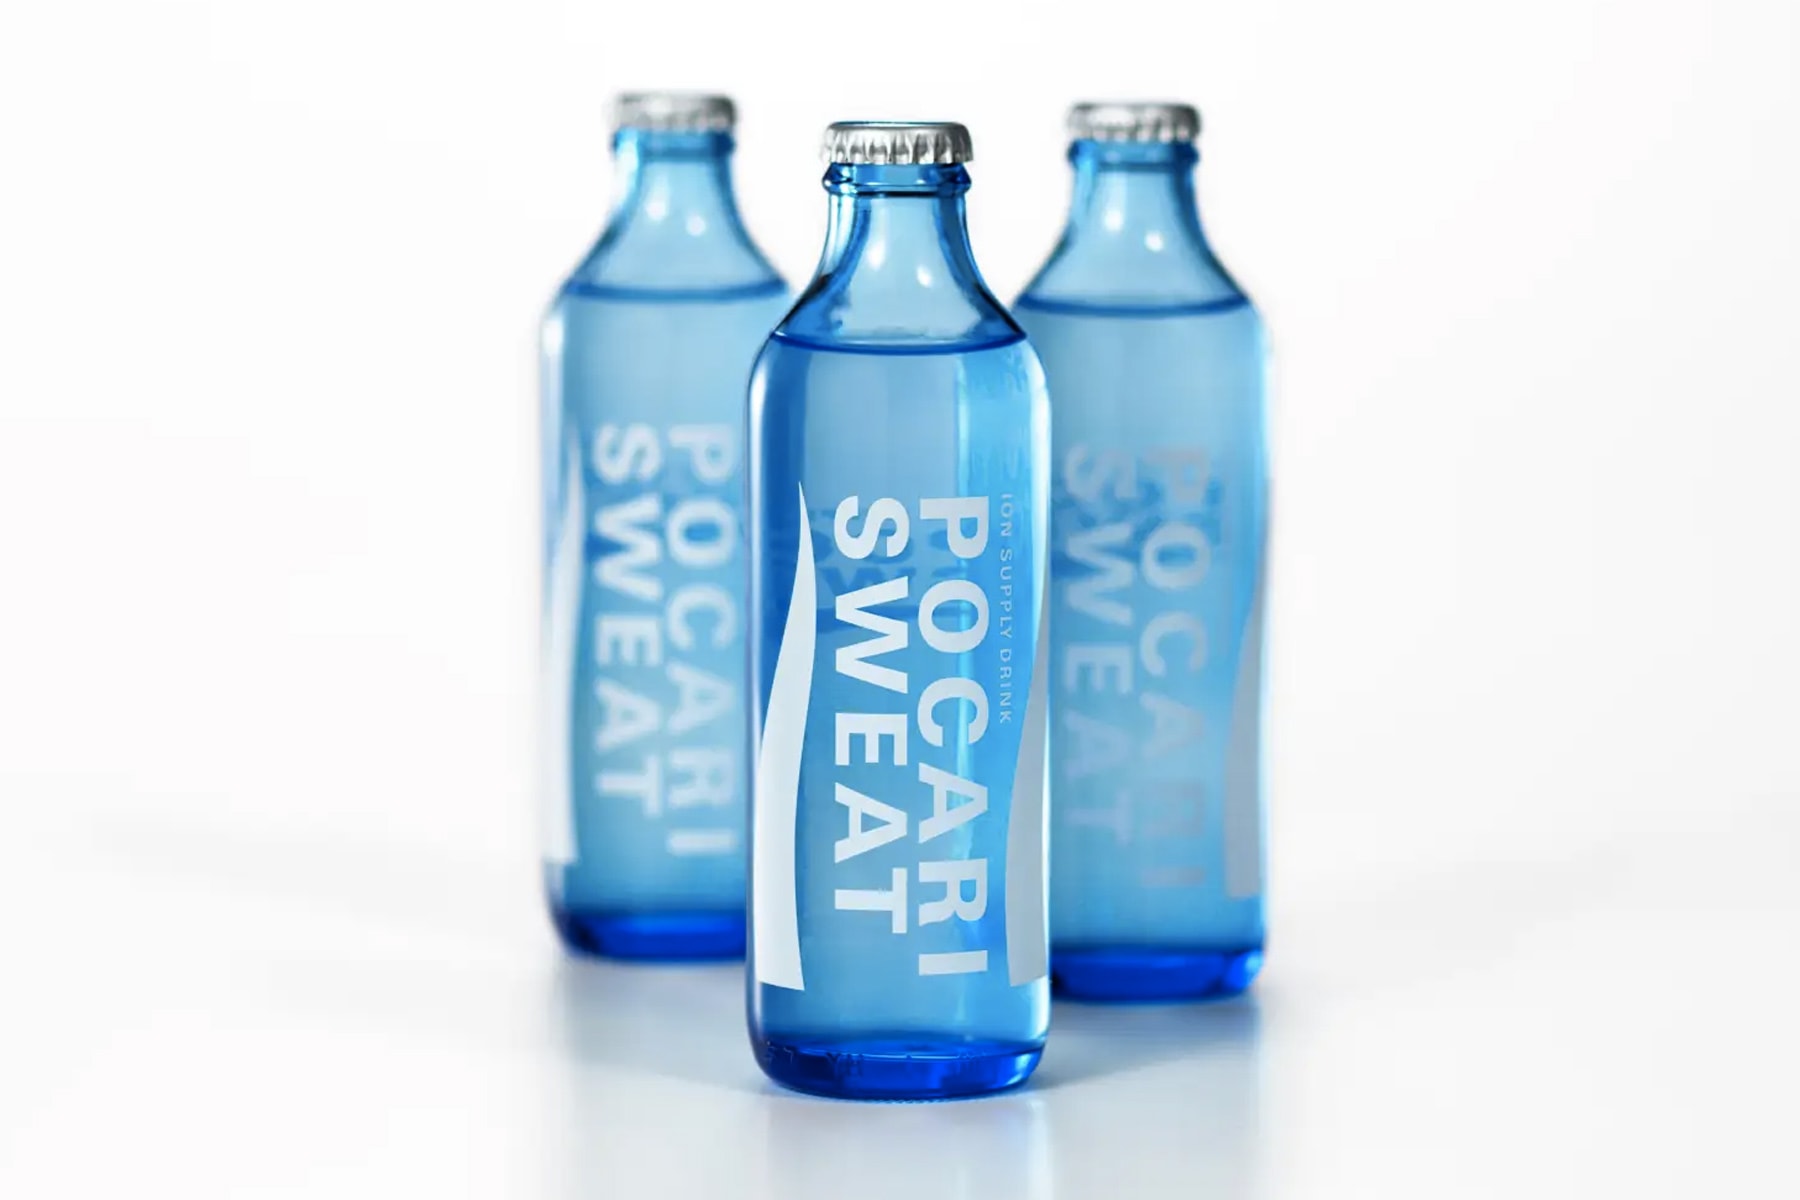 寶礦力 Pocari Sweat 推出可回收環保玻璃瓶包裝